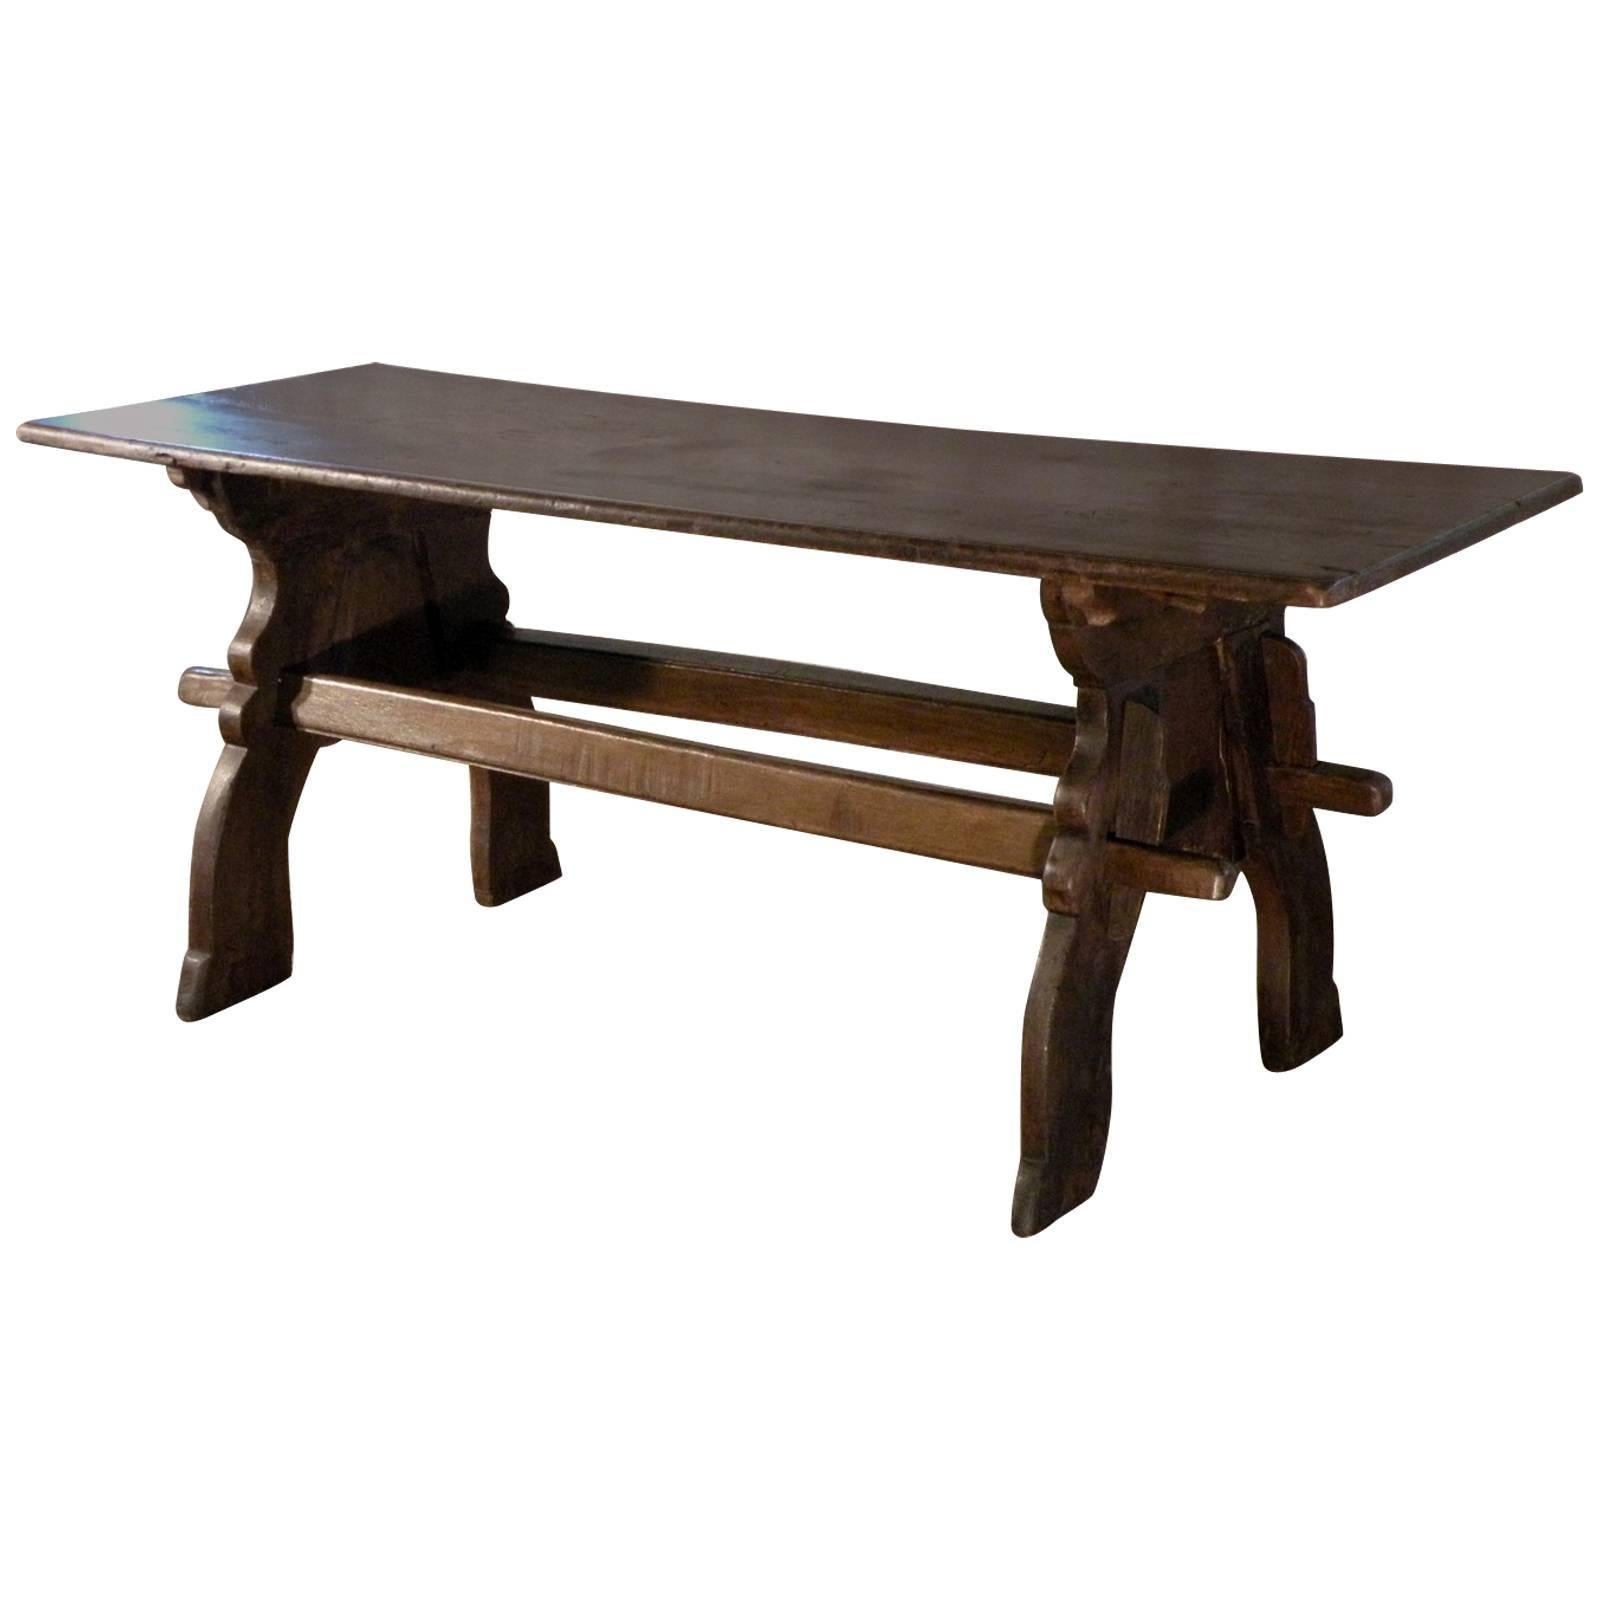 Nordeuropäischer Eichenholz- Trestle-Tisch im späten gotischen Stil des 16. Jahrhunderts